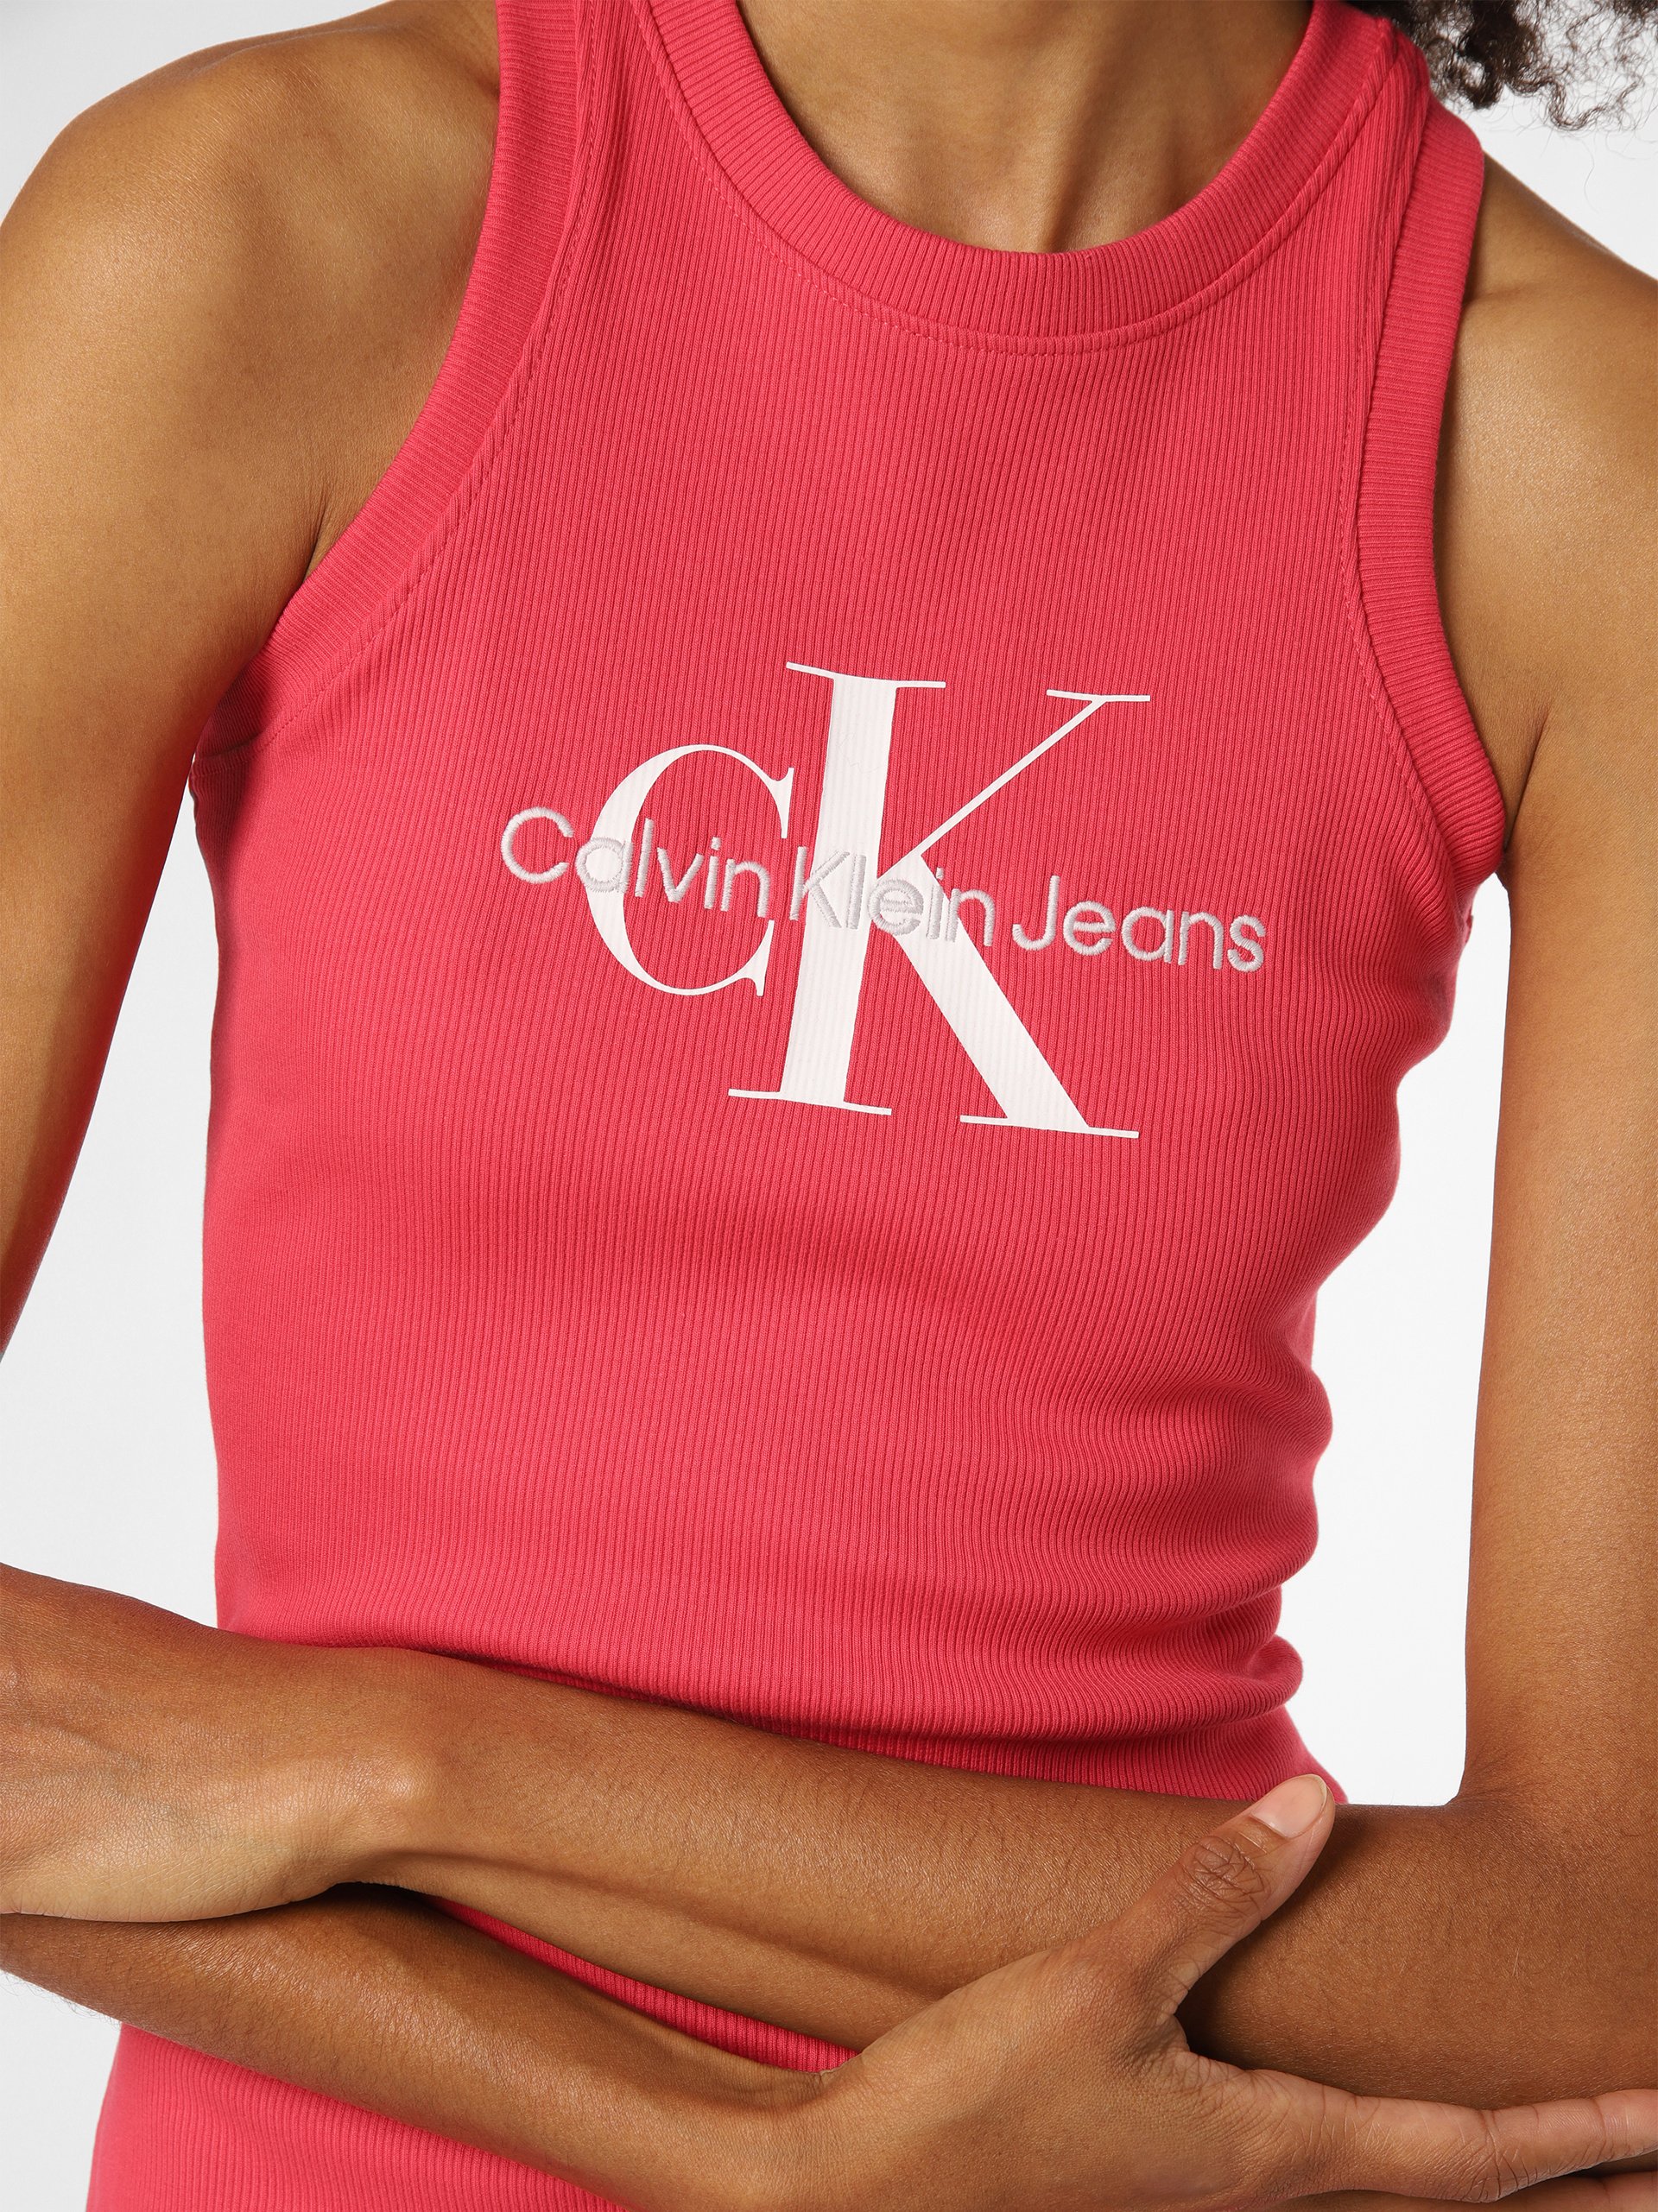 Jeans Klein Calvin kaufen Damen Kleid online